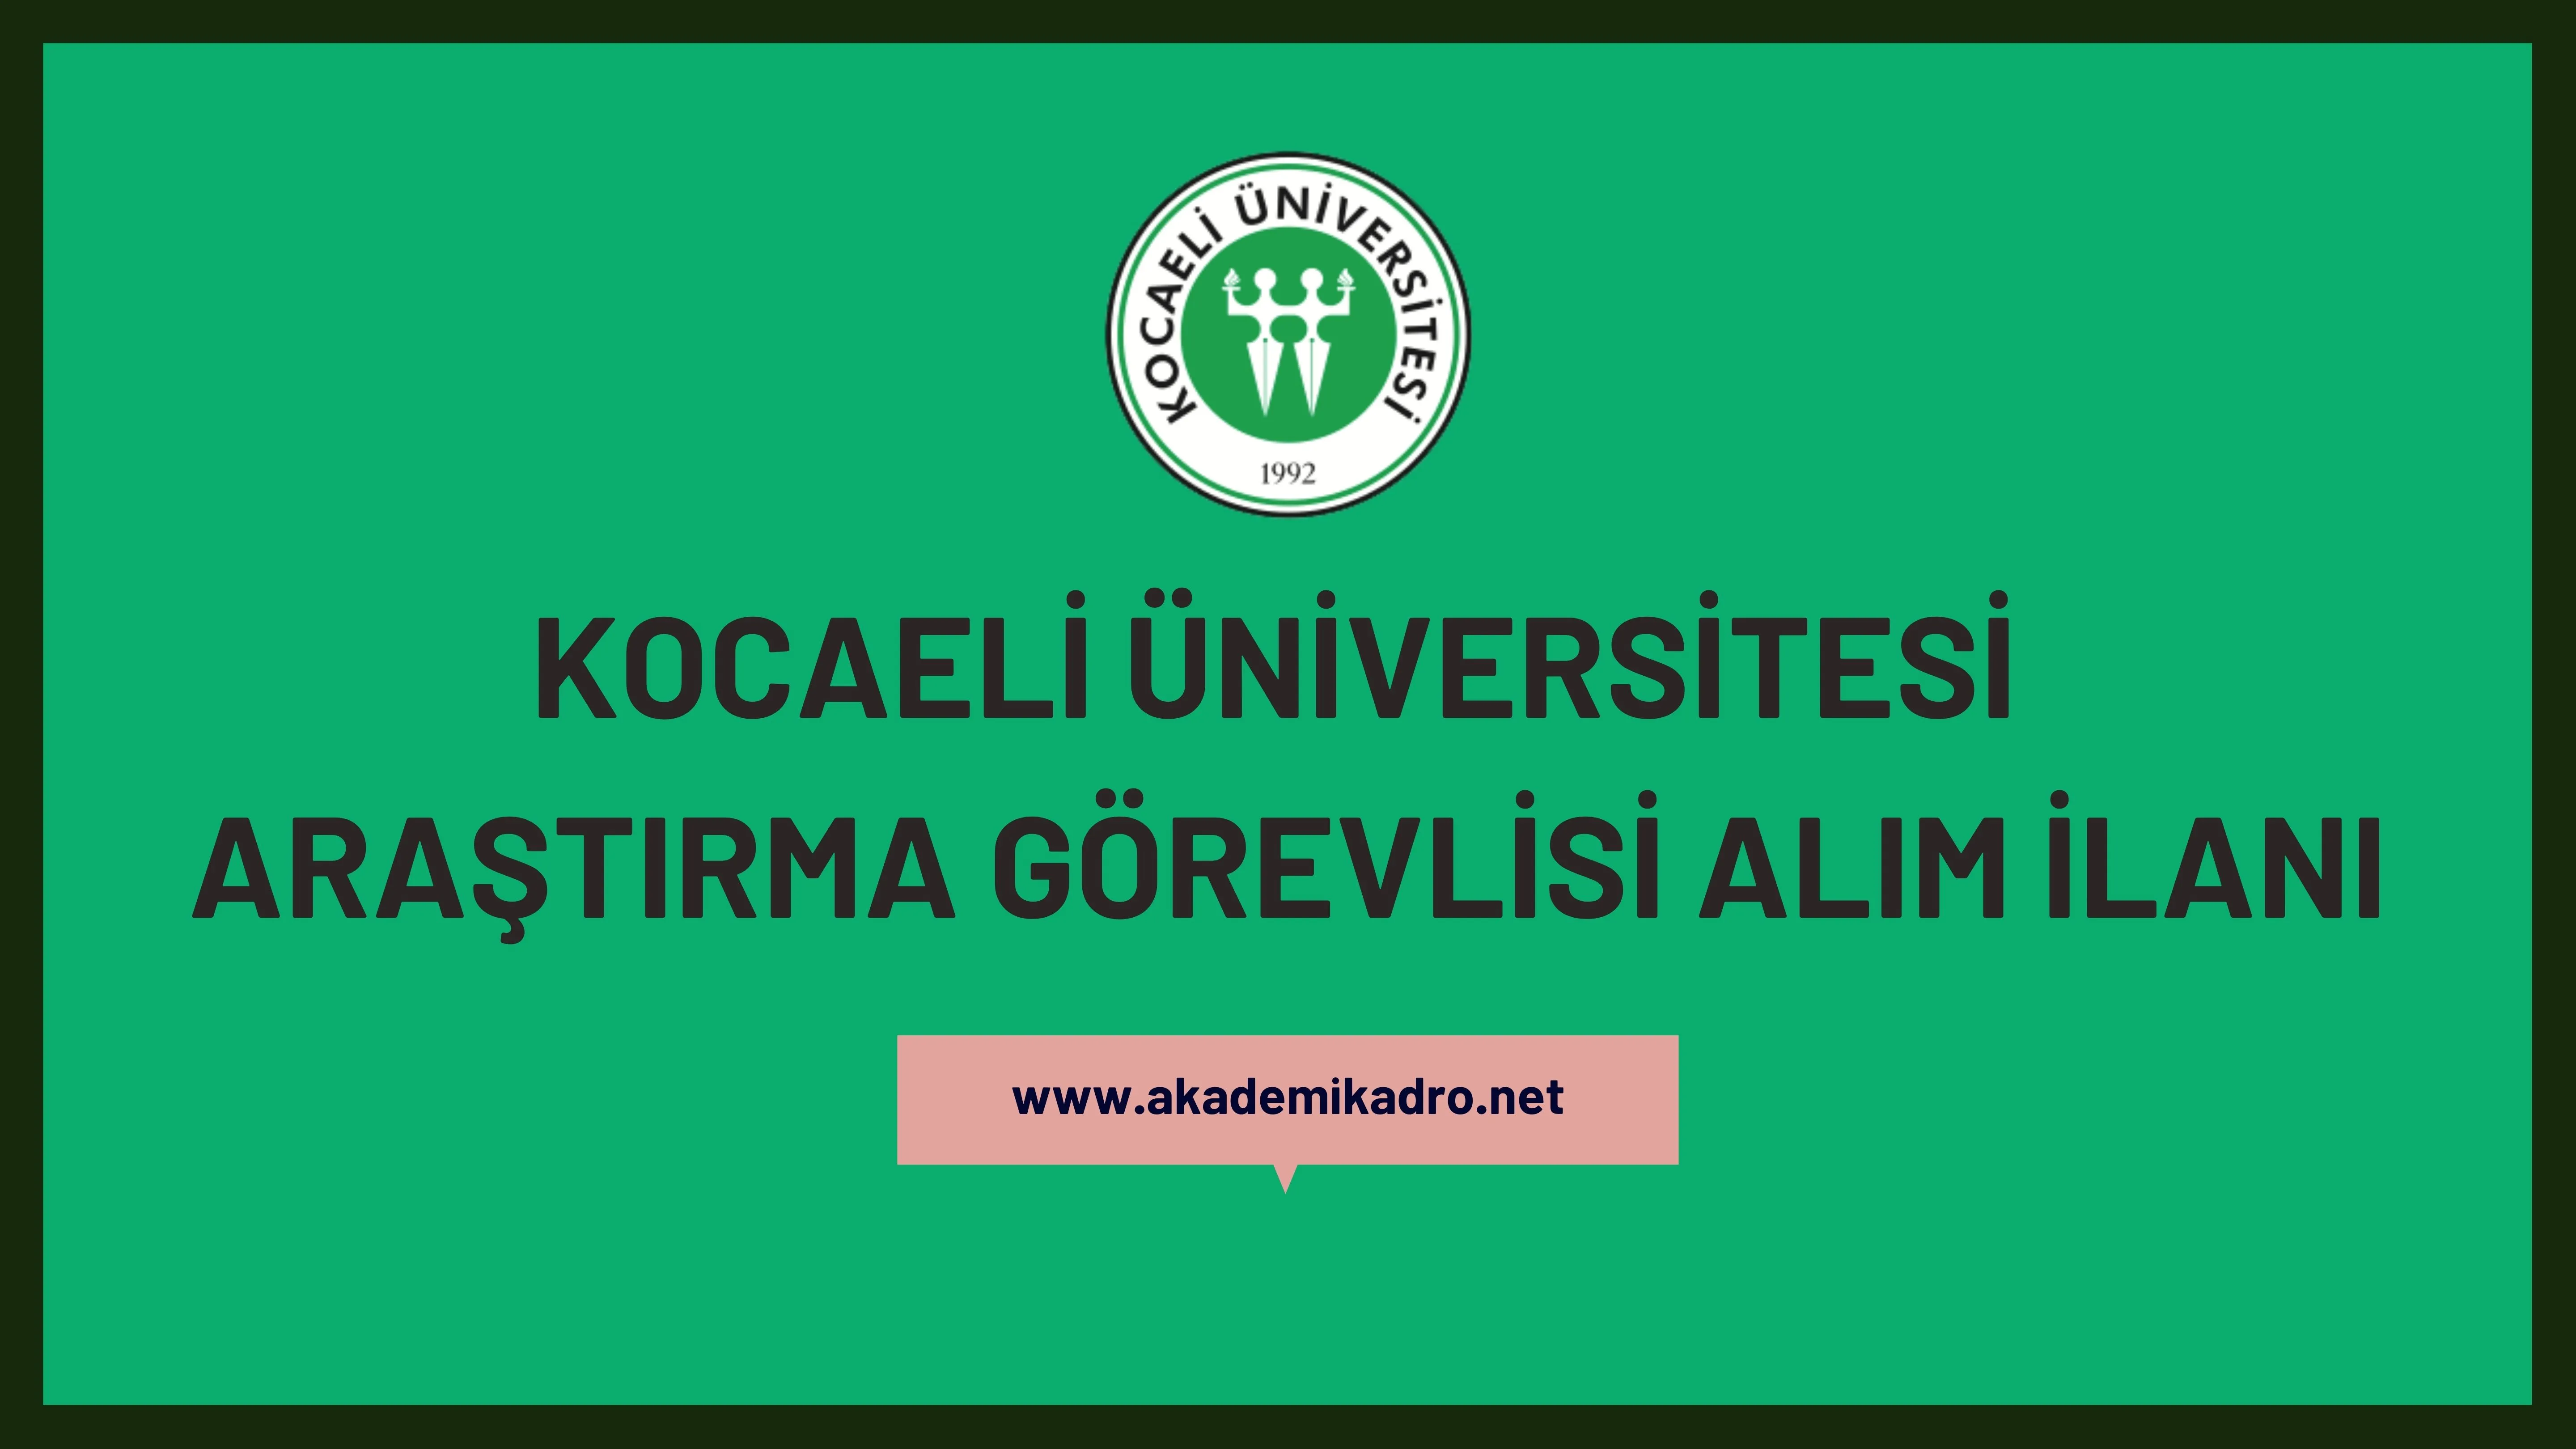 Kocaeli Üniversitesi 8 Araştırma görevlisi alacaktır. Son başvuru tarihi 06 Kasım 2023.